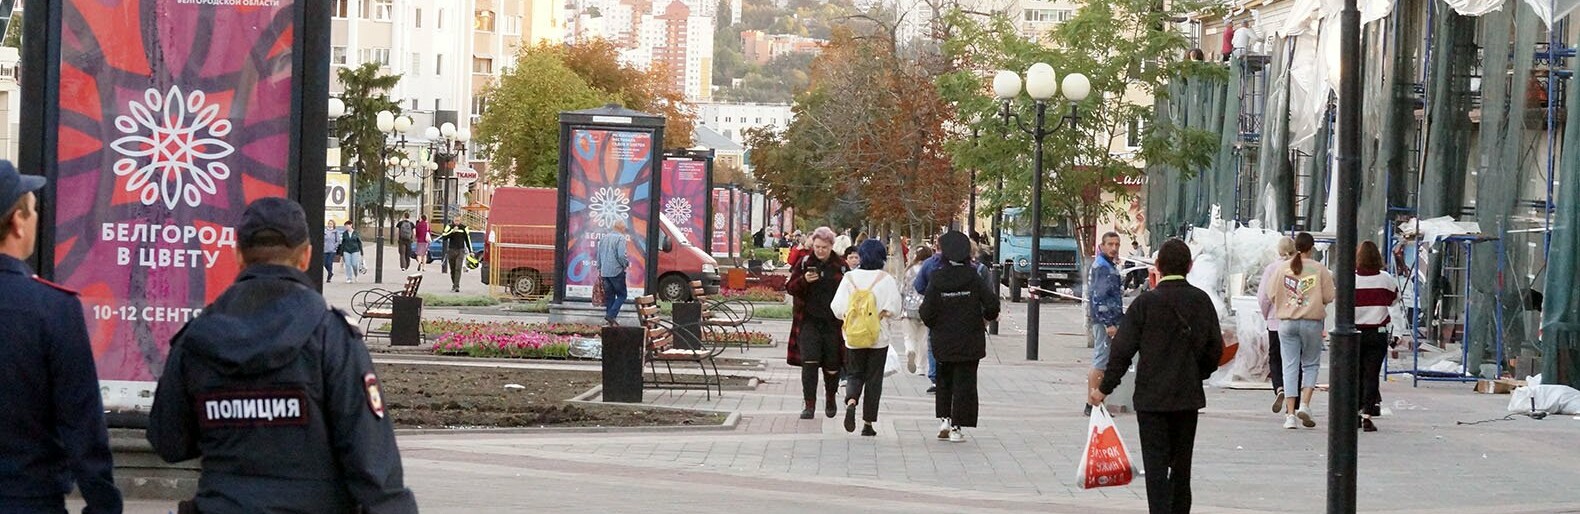 Почти половина жителей Белгородской области страдает от тревожности